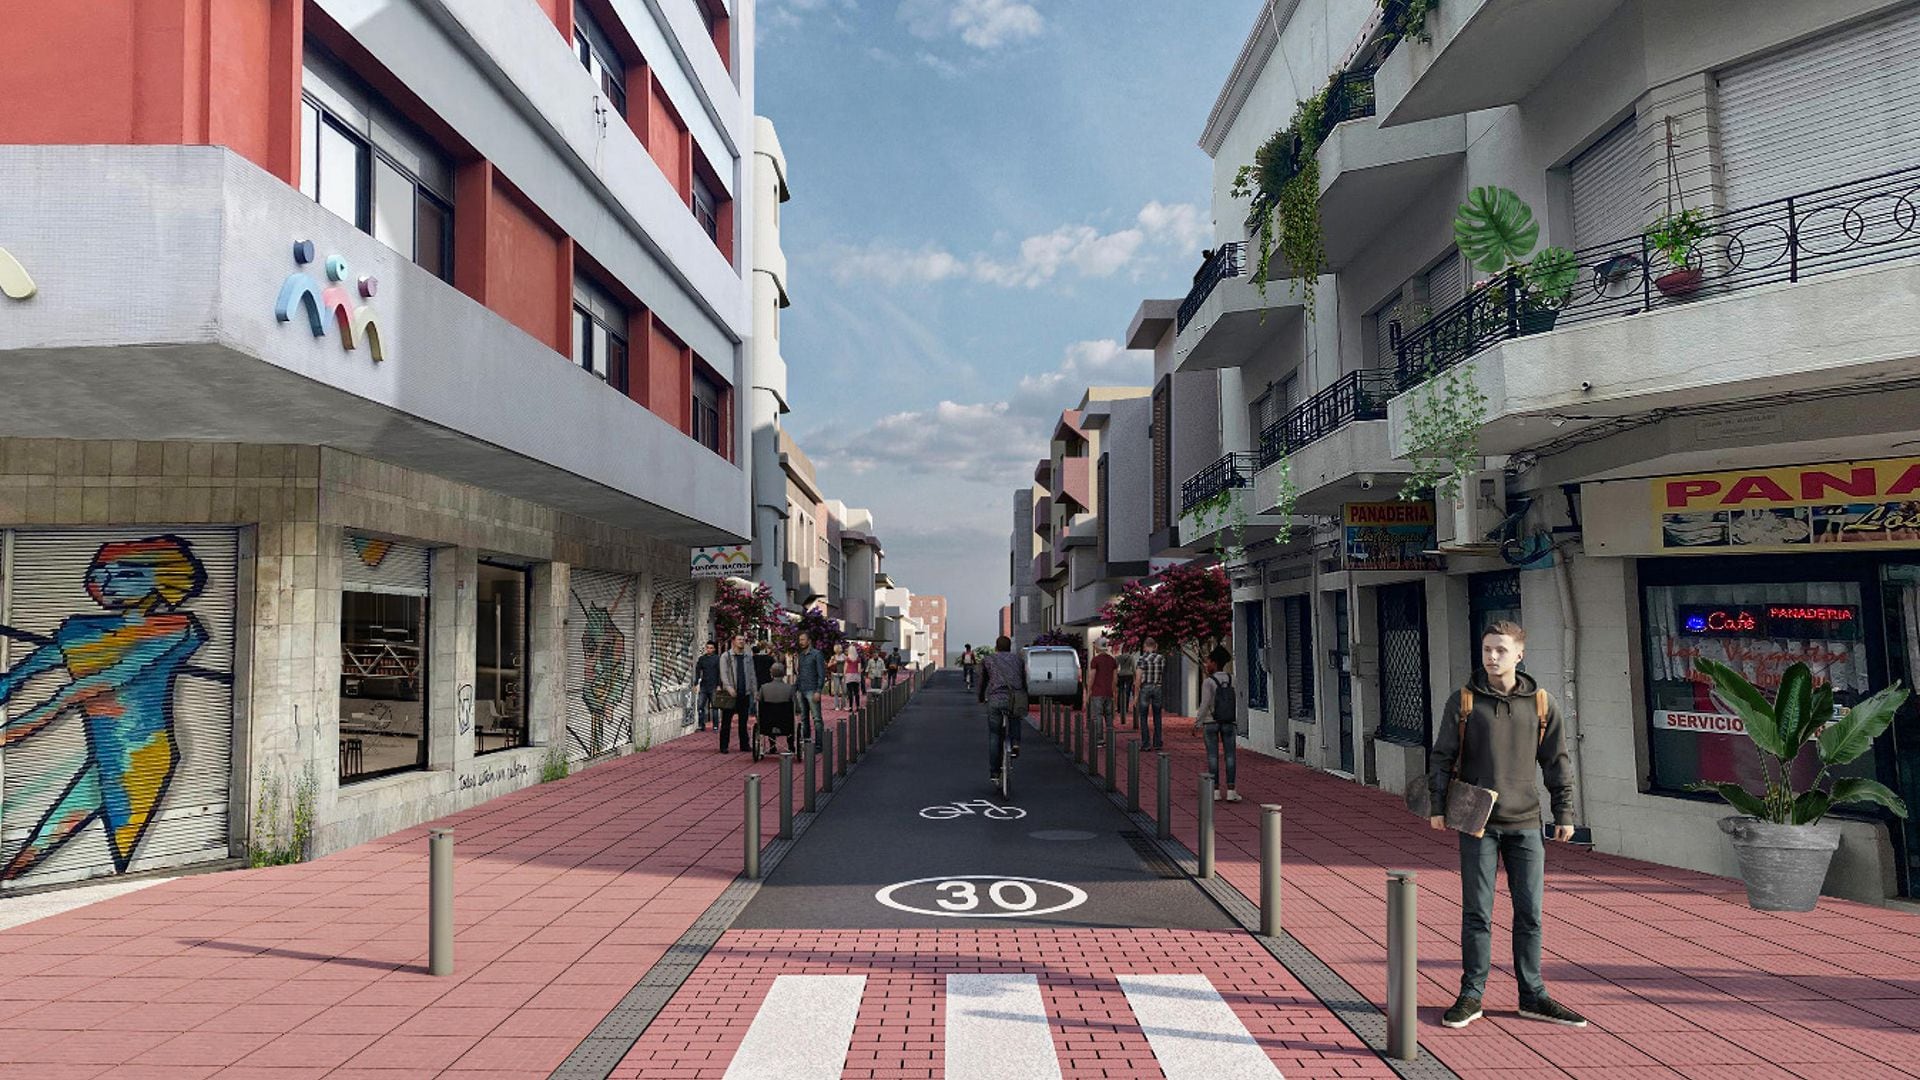 La Intendencia de Montevideo tiene previsto aumentar los espacios peatonales en su barrio histórico. (Intendencia de Montevideo)